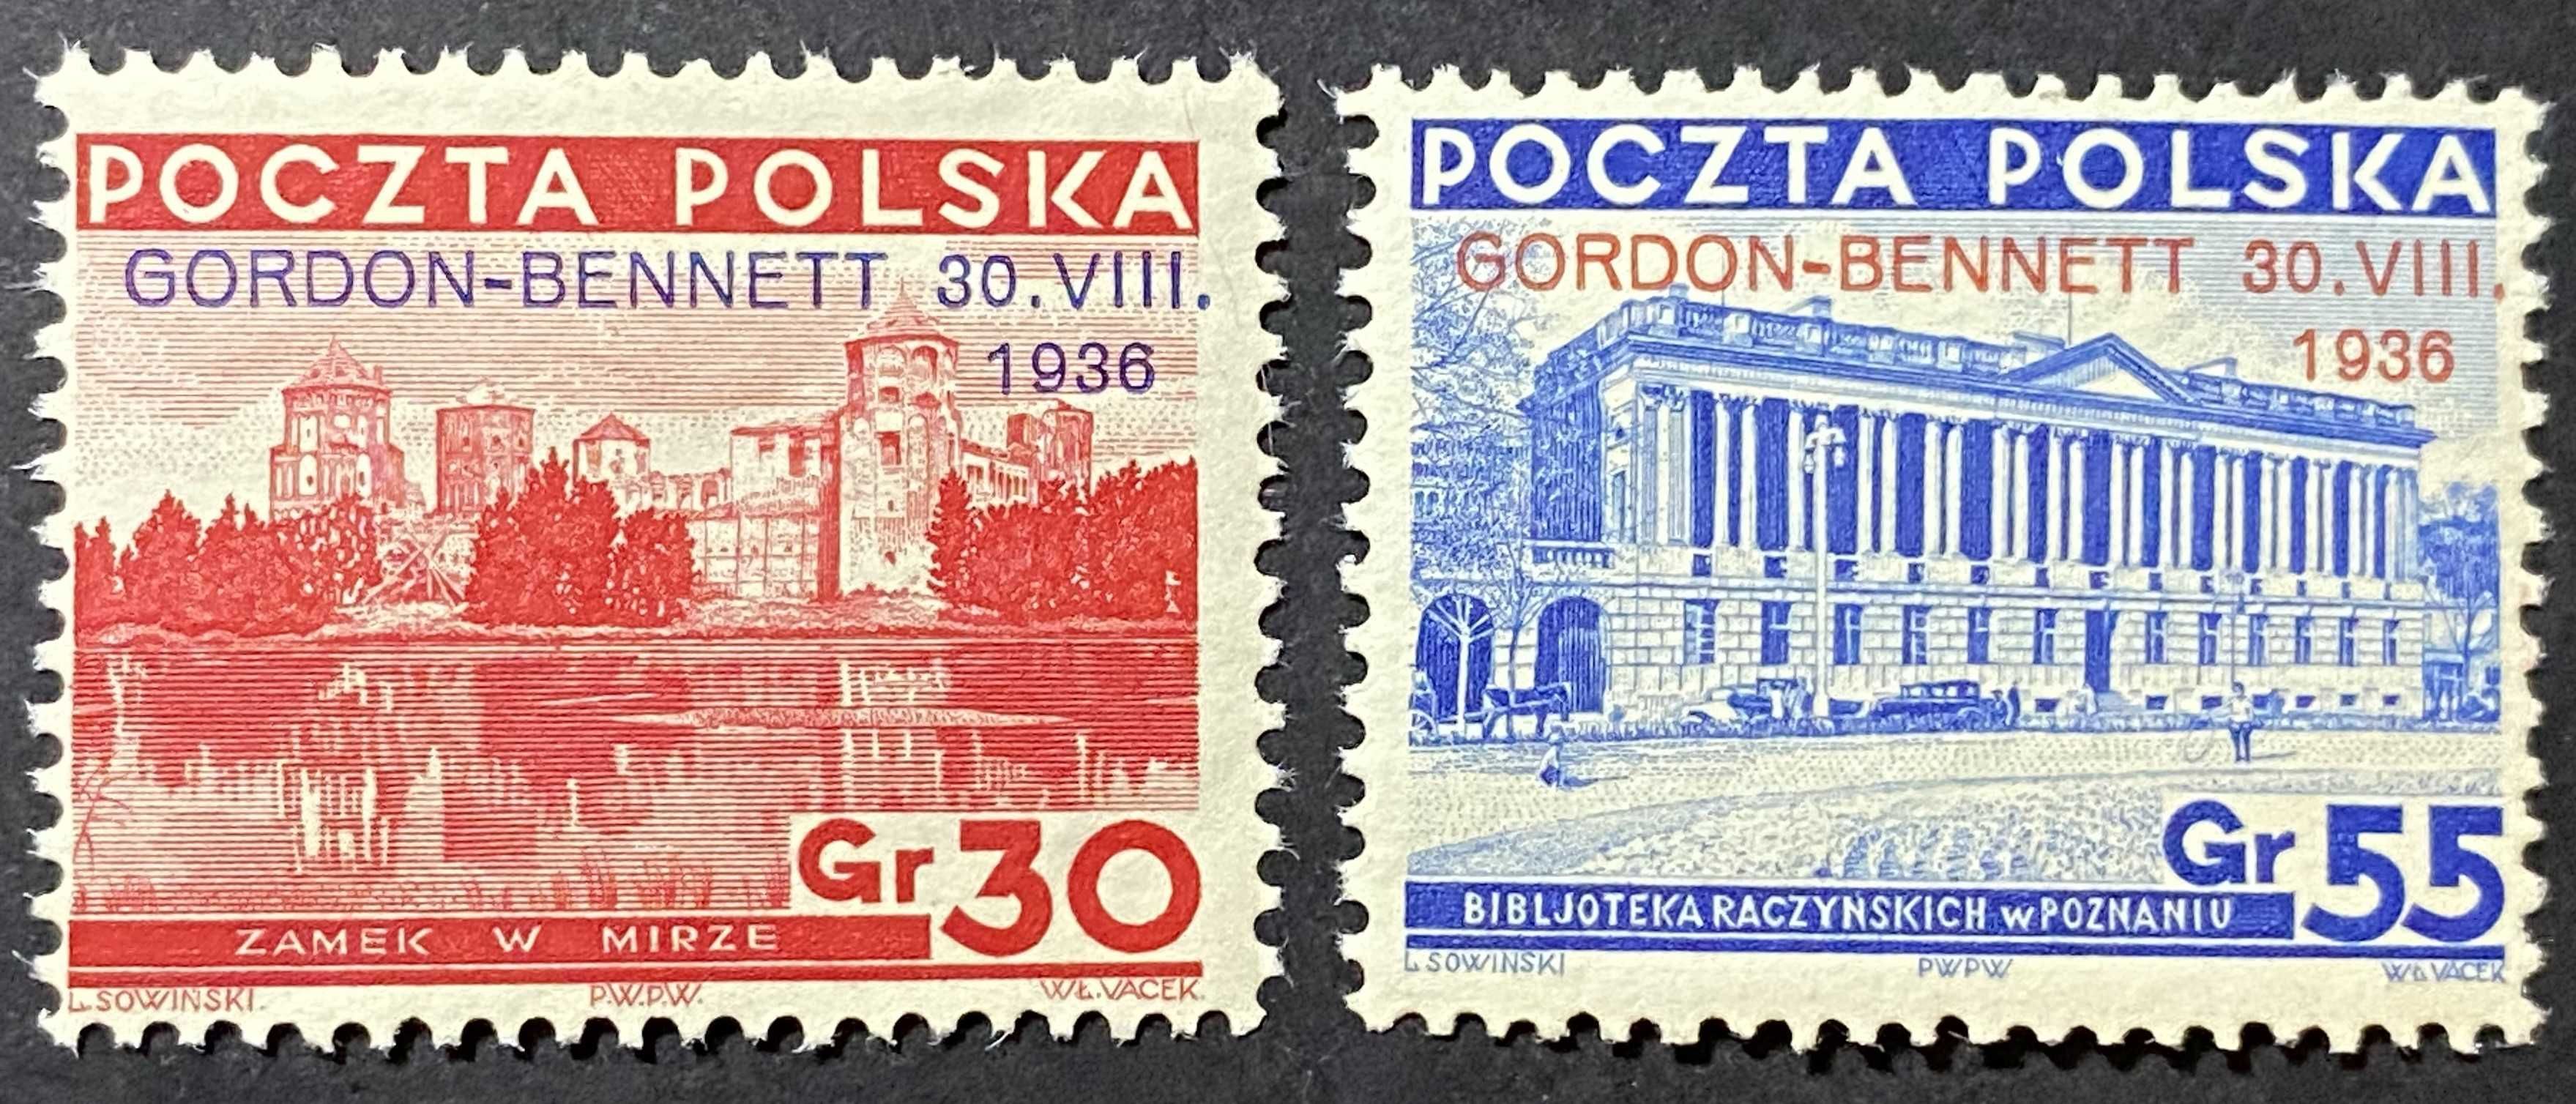 Znaczki Polska Fi 292 293 Gordon Bennett 1936r